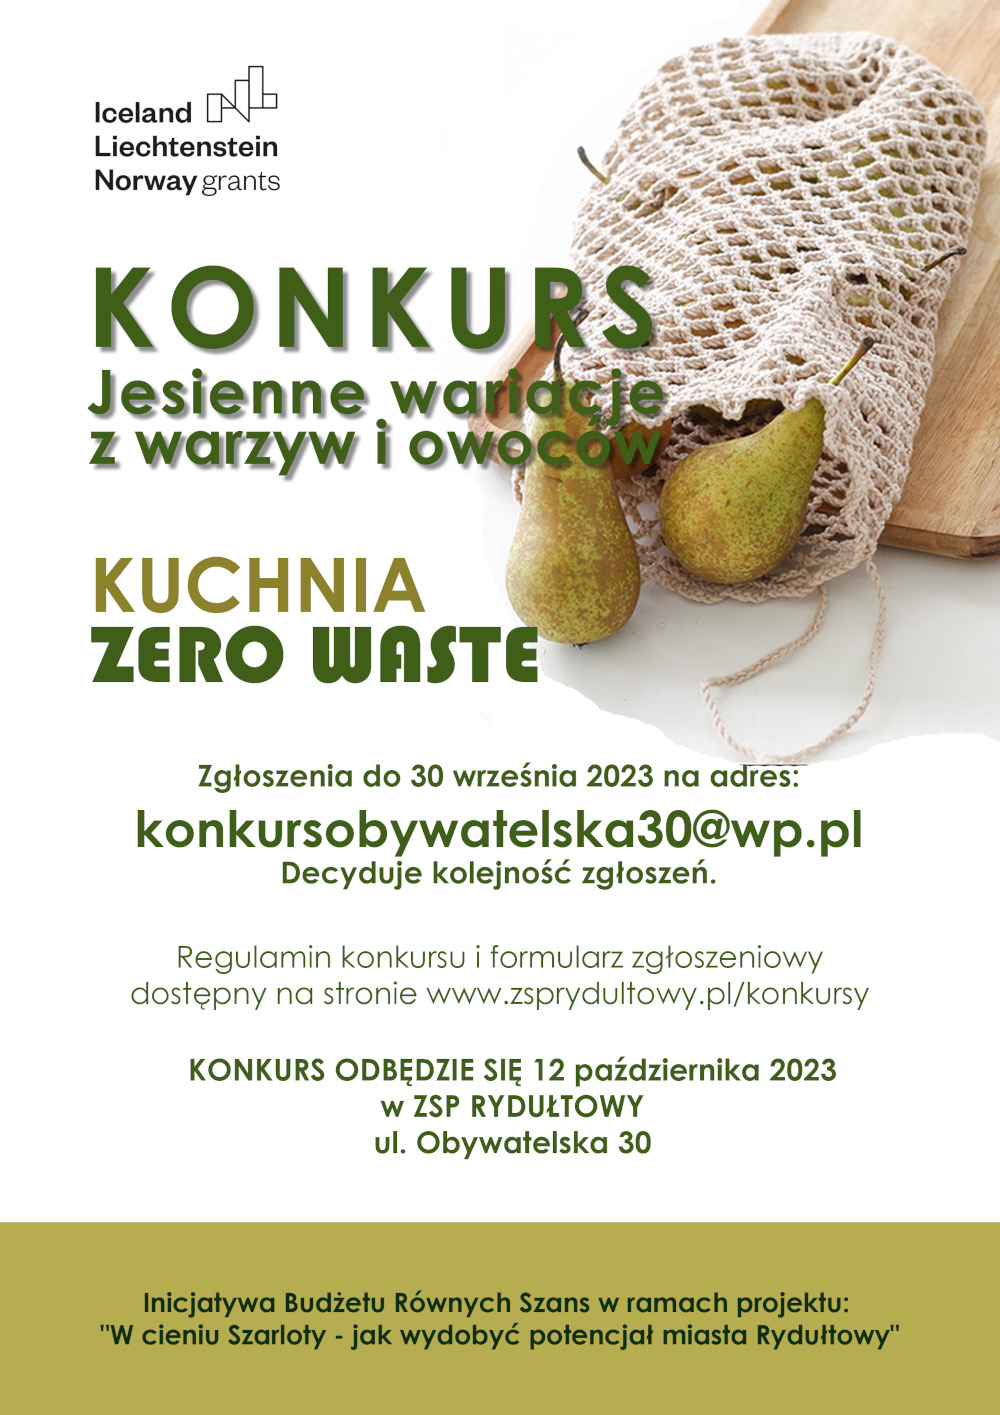 plakat konkurs jesienne wariacje kuchnia zero waste